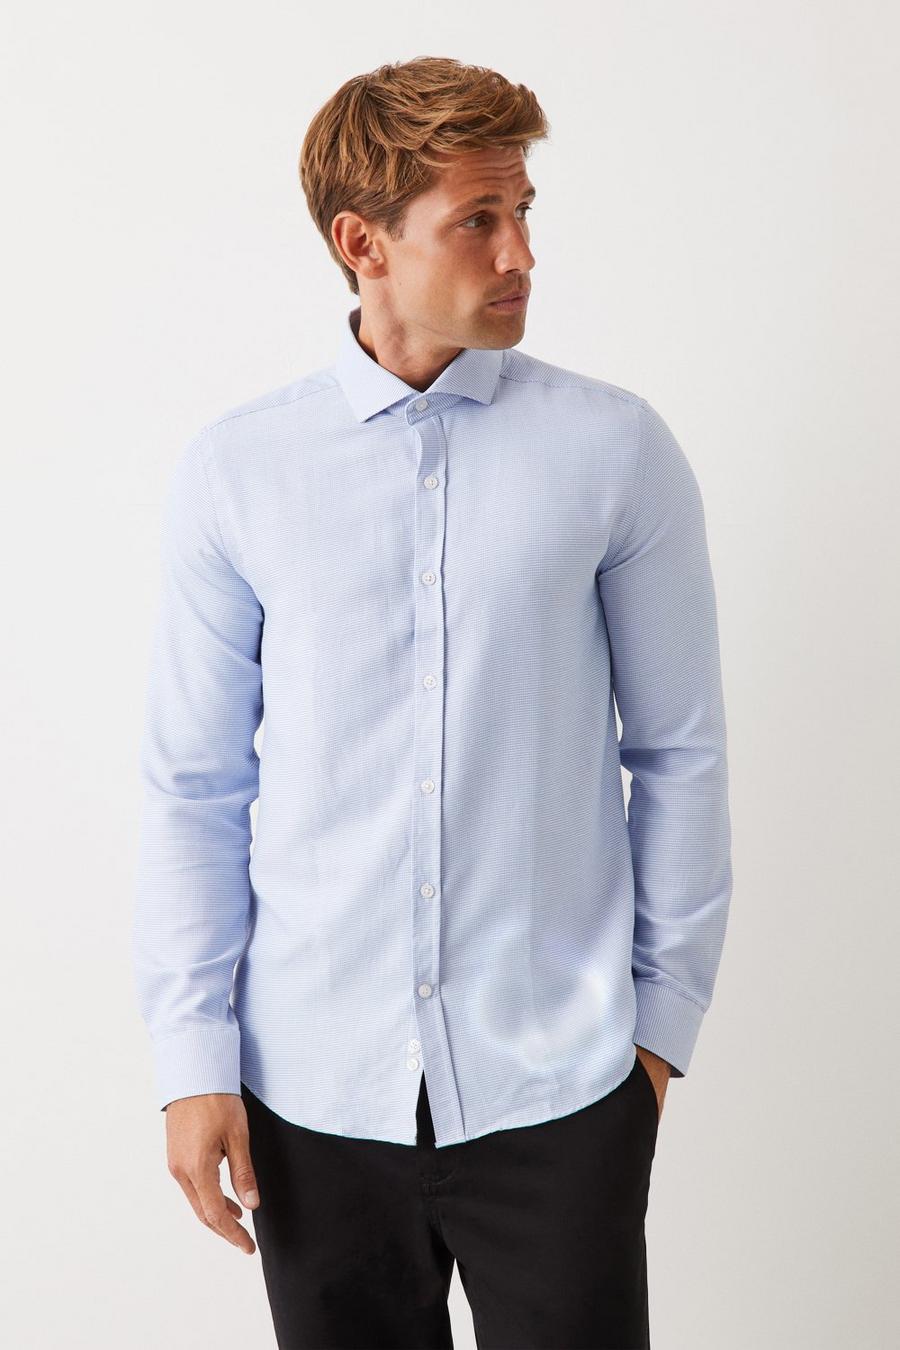 Long Sleeve Tailored Blue Puppytooth Cutaway Collar Shirt